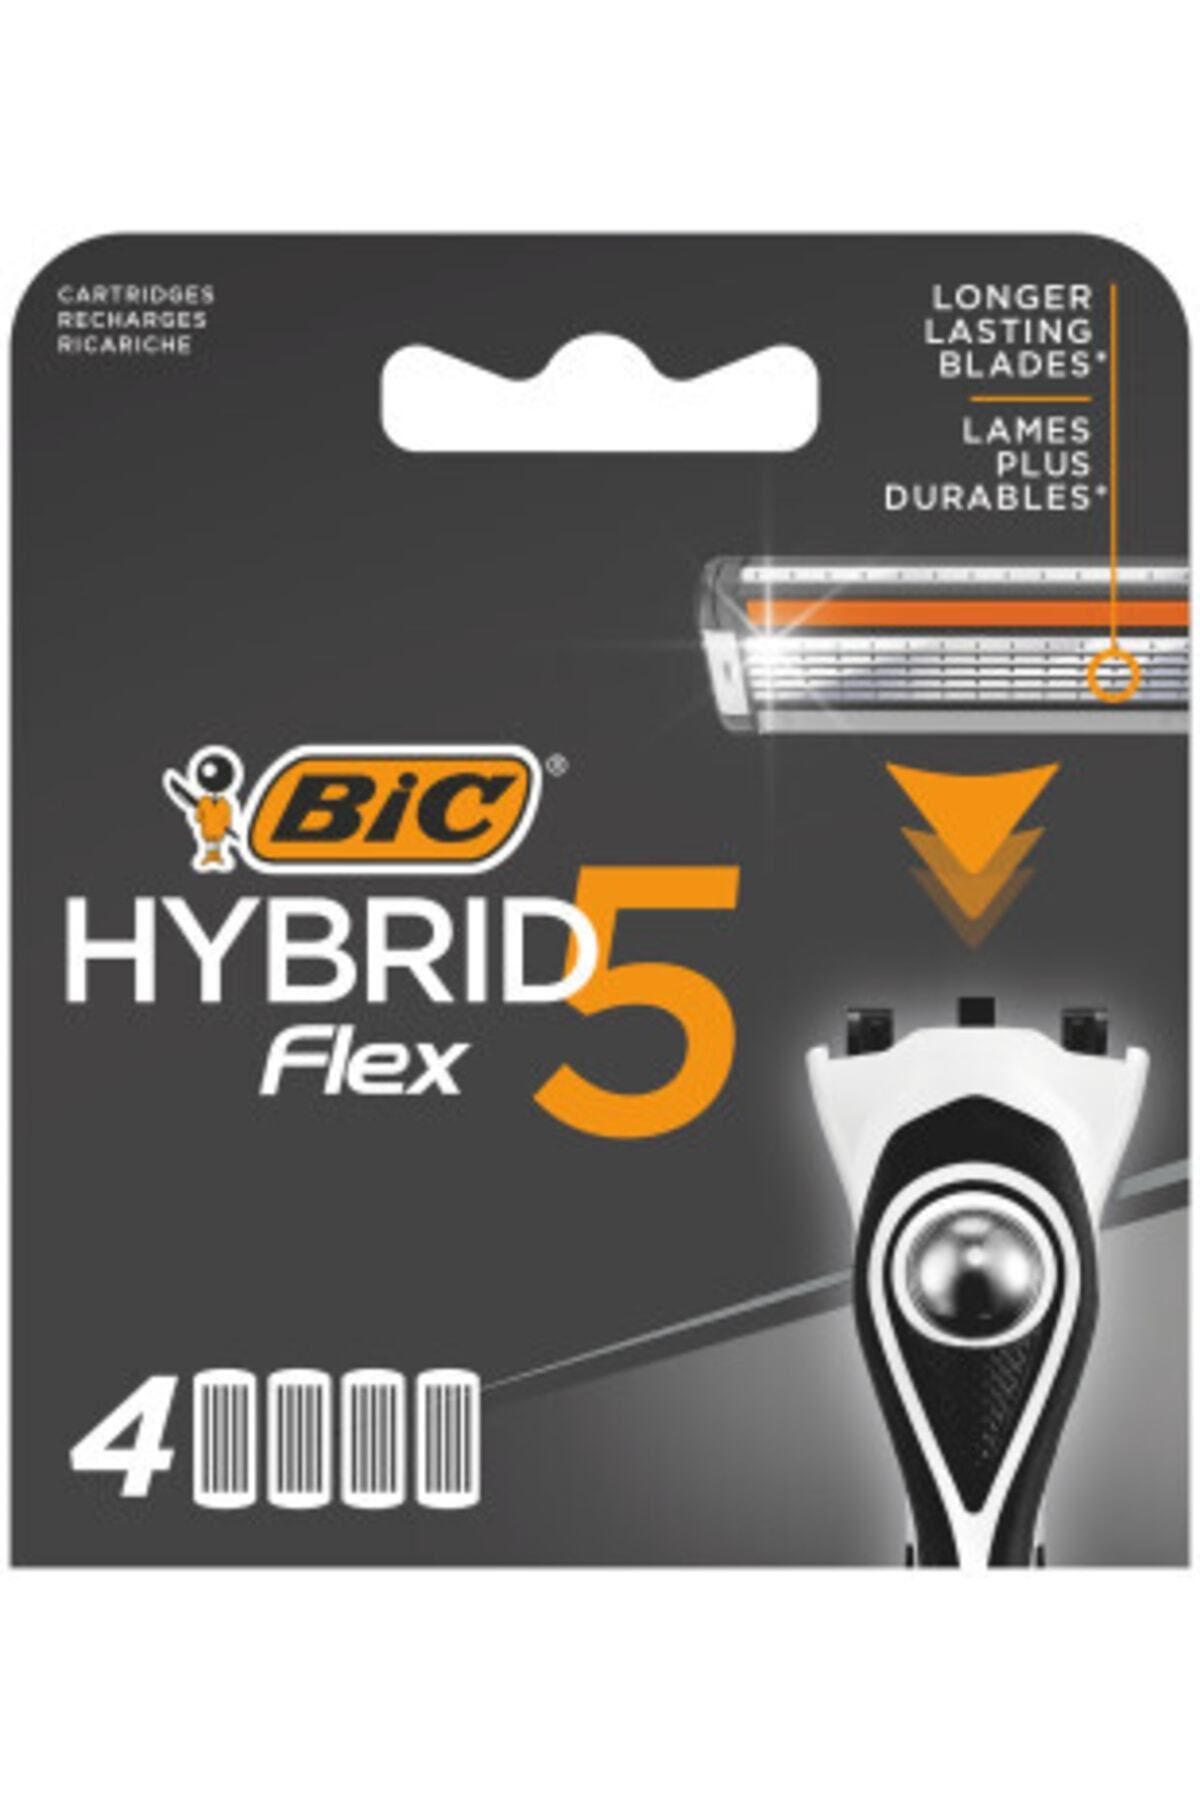 Bic Flex 5 Hybrid Yedek Tıraş Bıçağı Kartuşu 4'lü (5 BIÇAK)